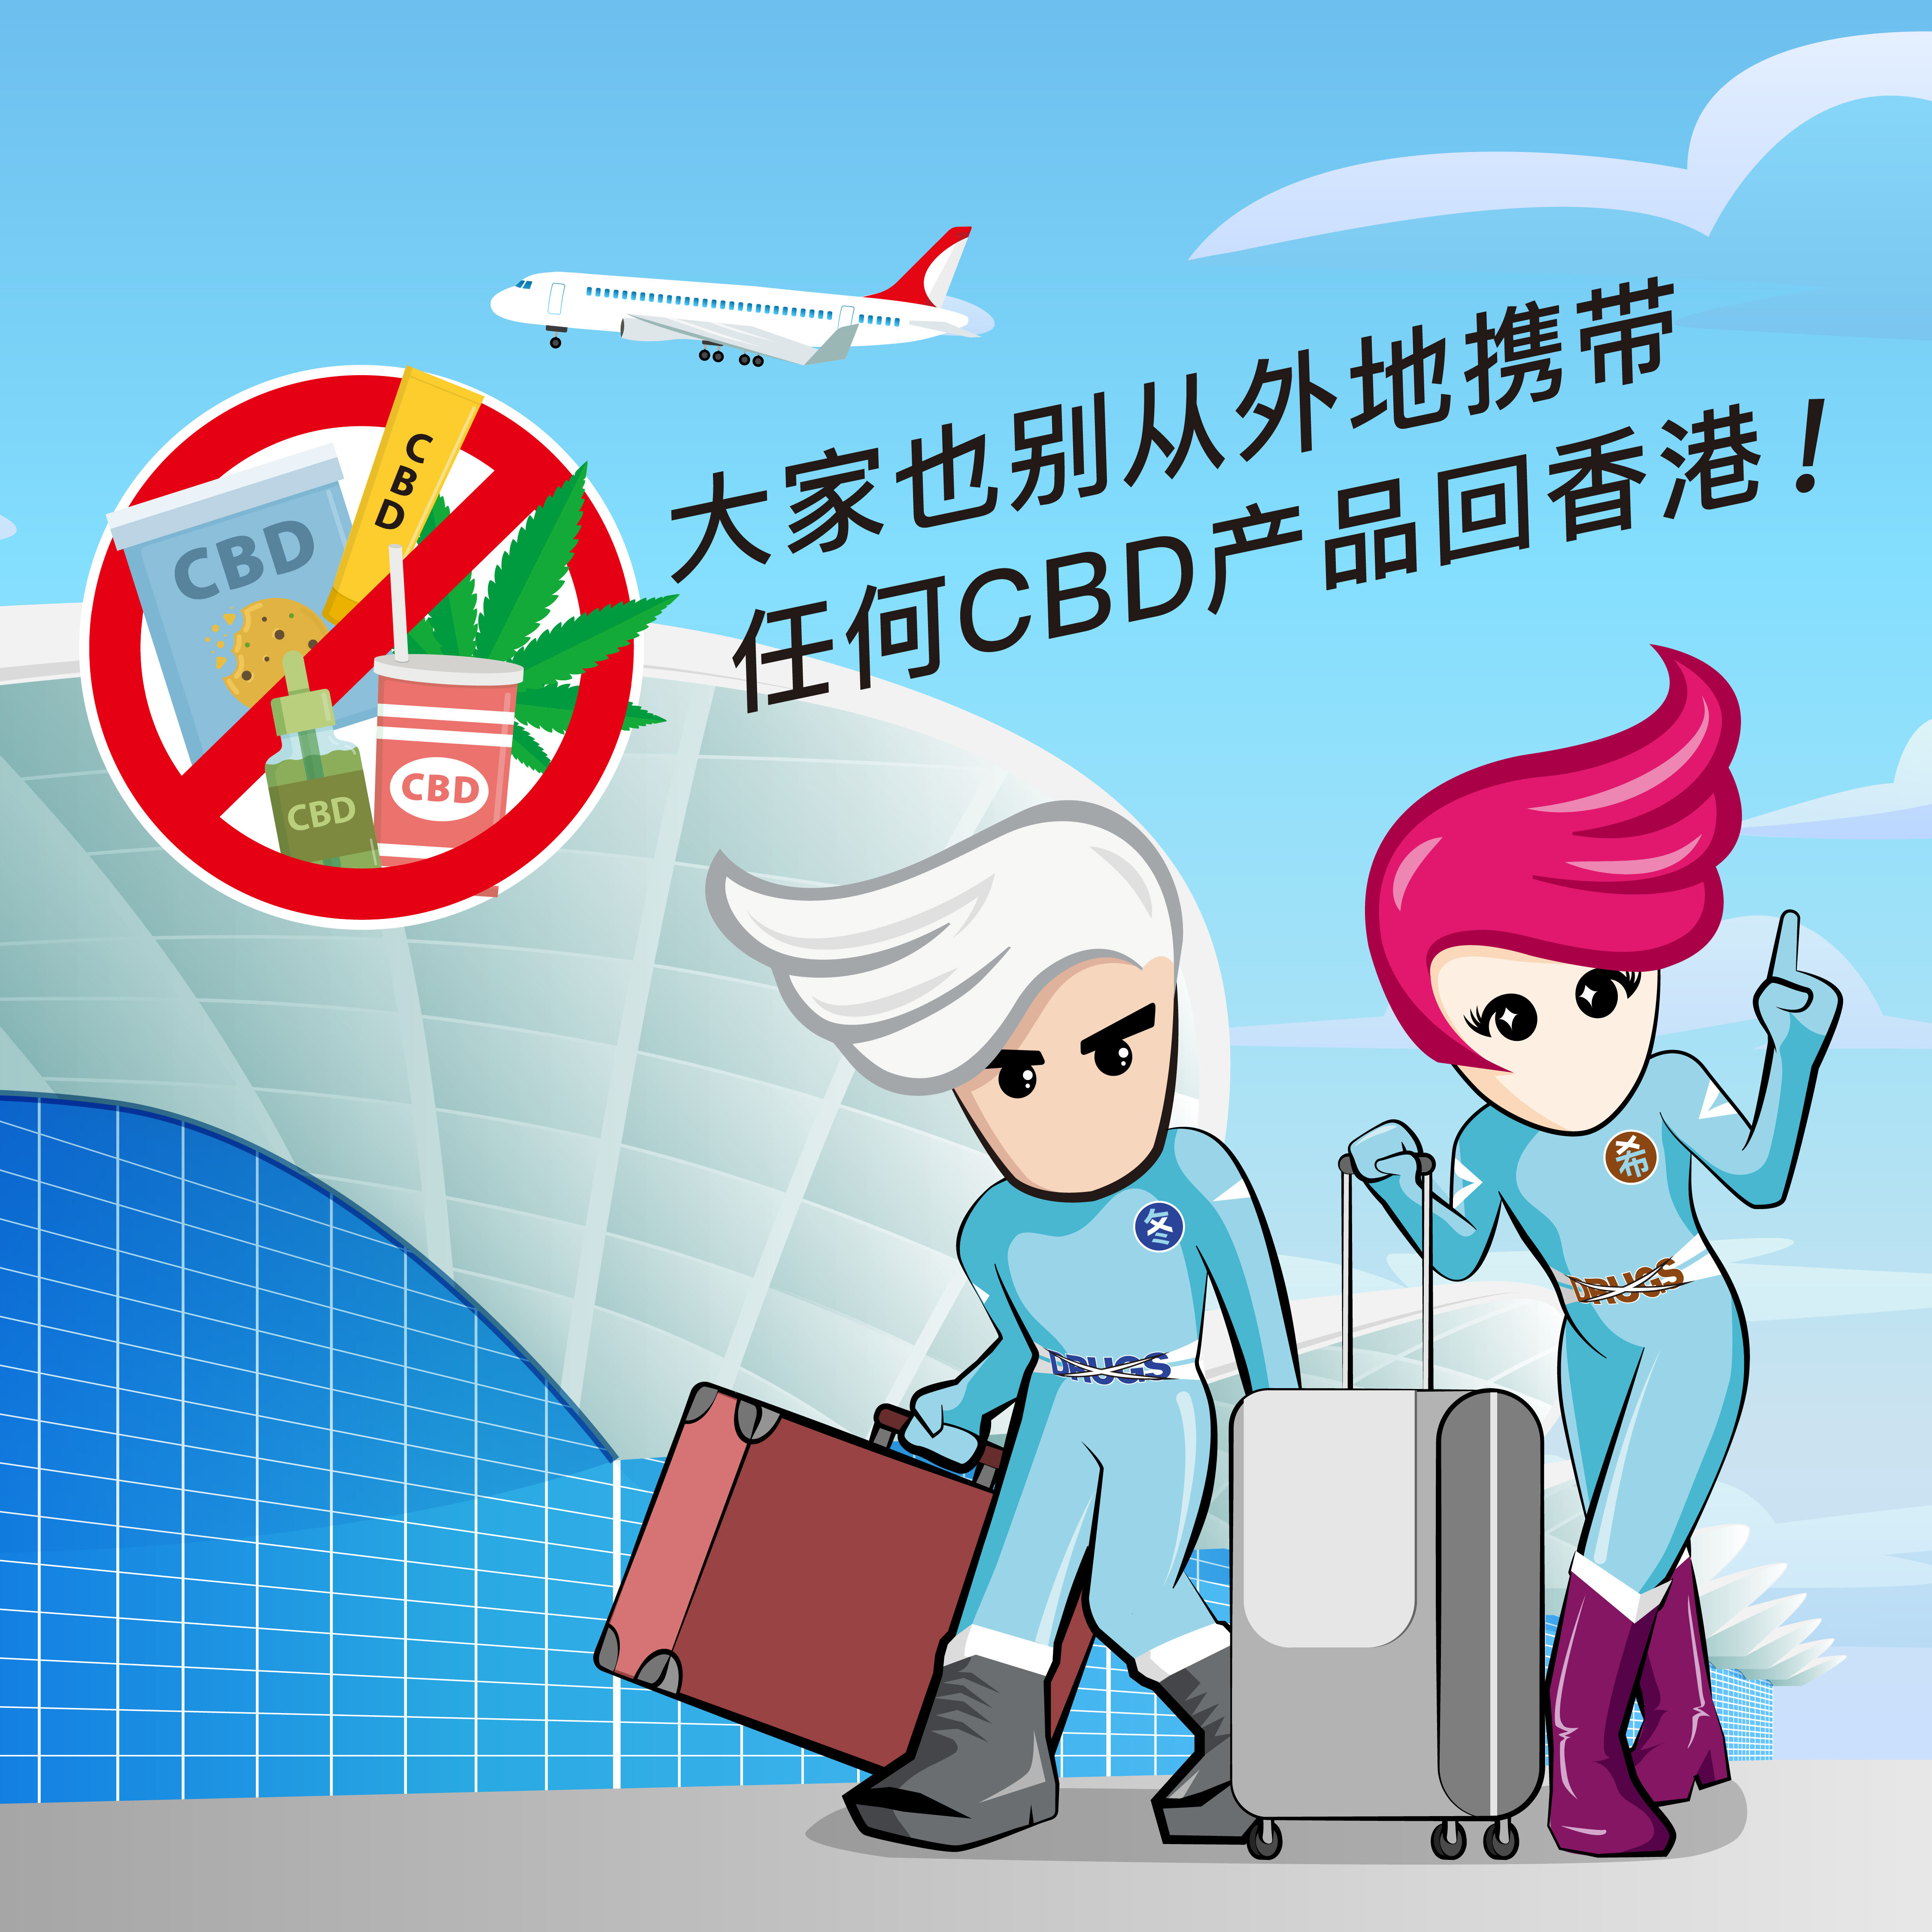 大家也別从外地携带任何CBD产品回香港!